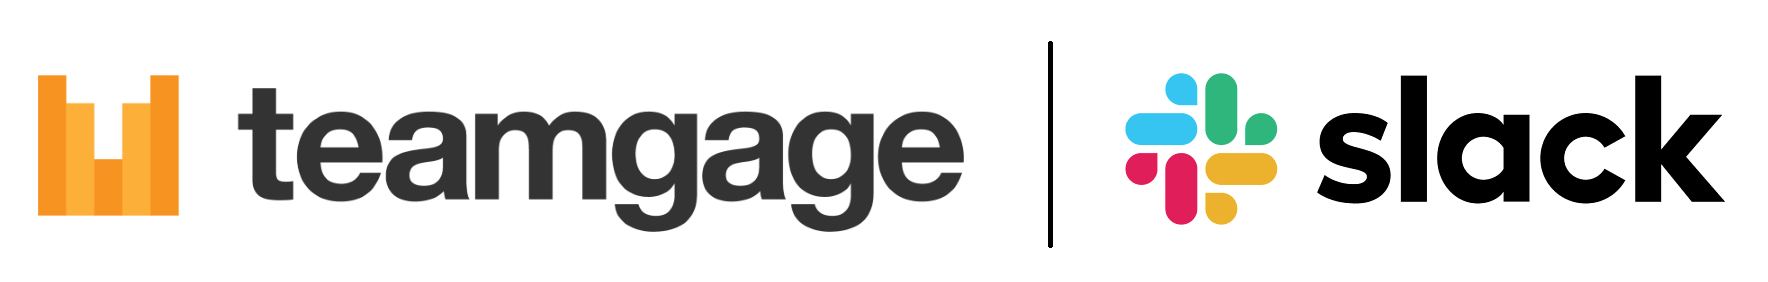 Teamgage and Slack logos together